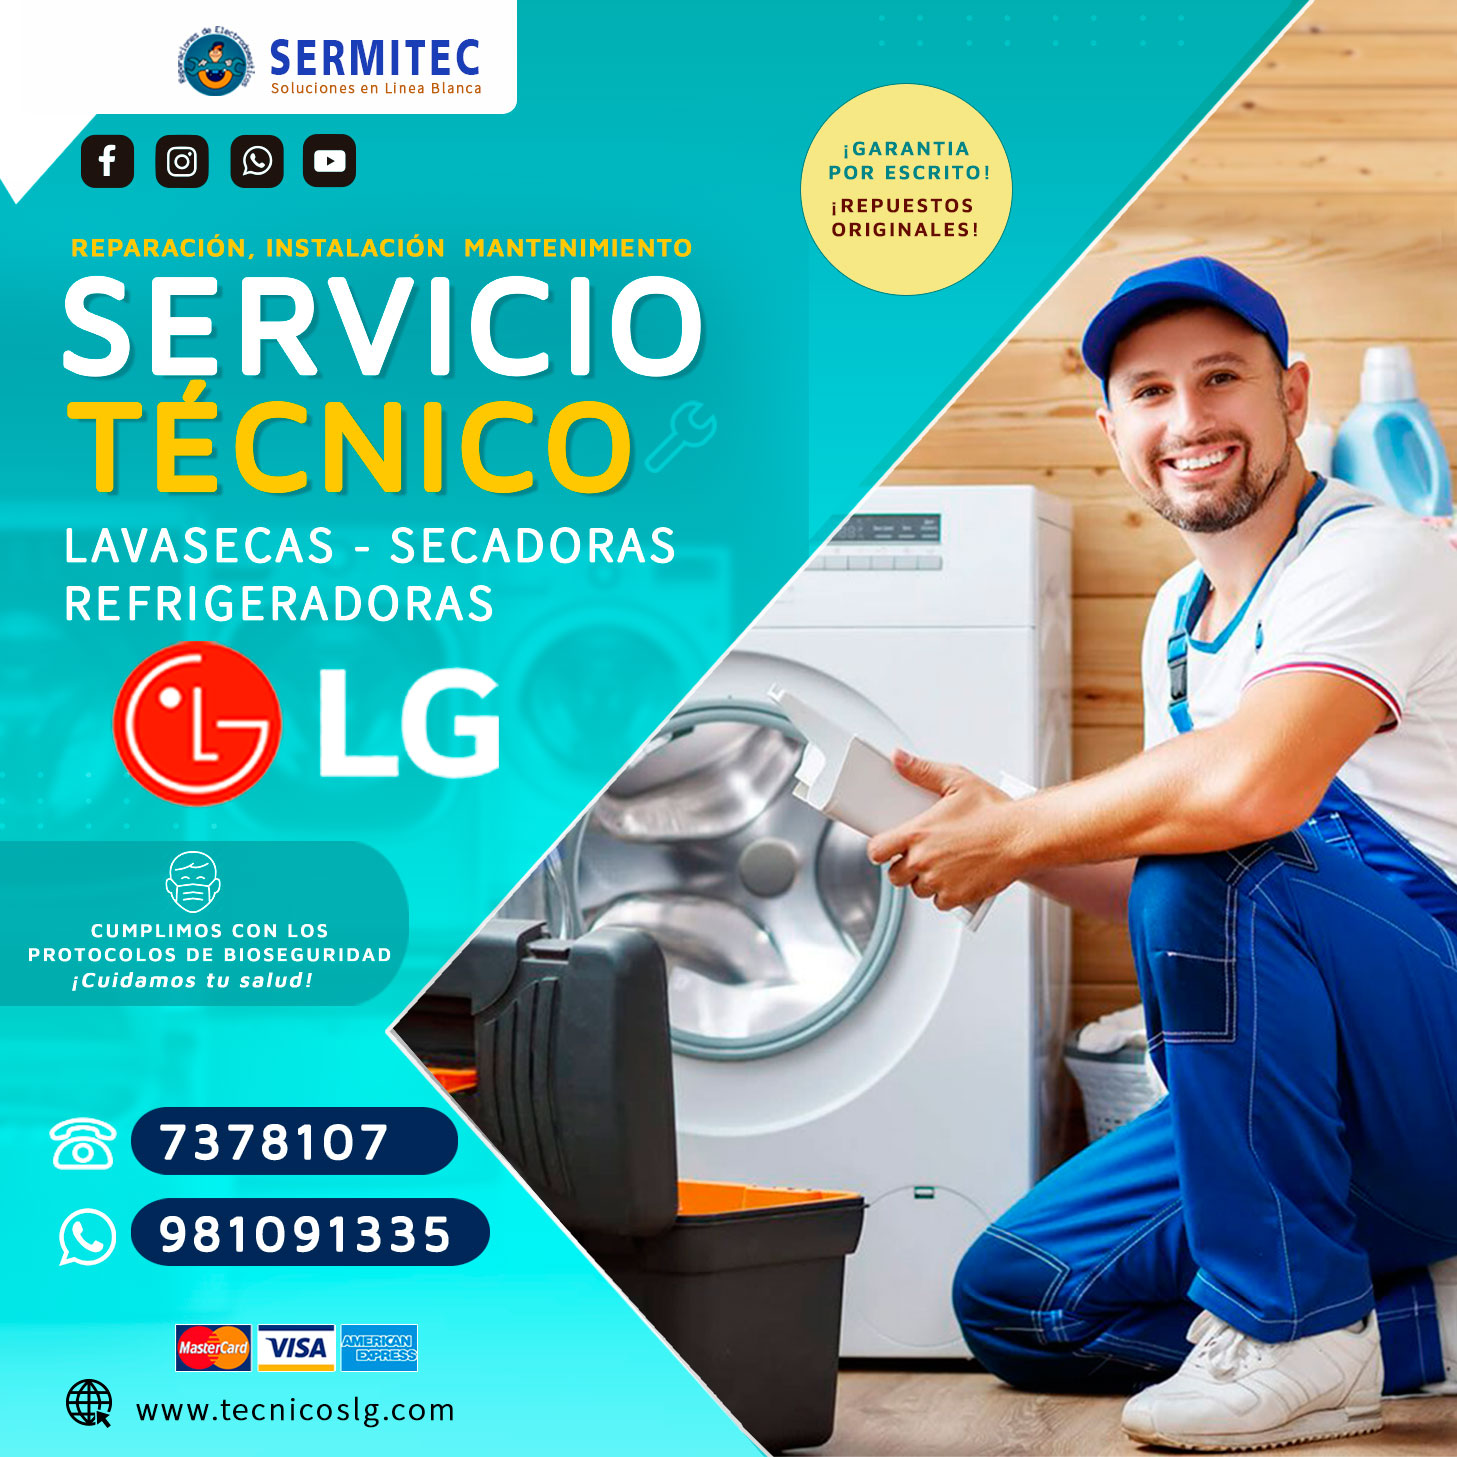 Soluciones Servicio técnico LG Lavadoras 981091335 CHACLACAYO